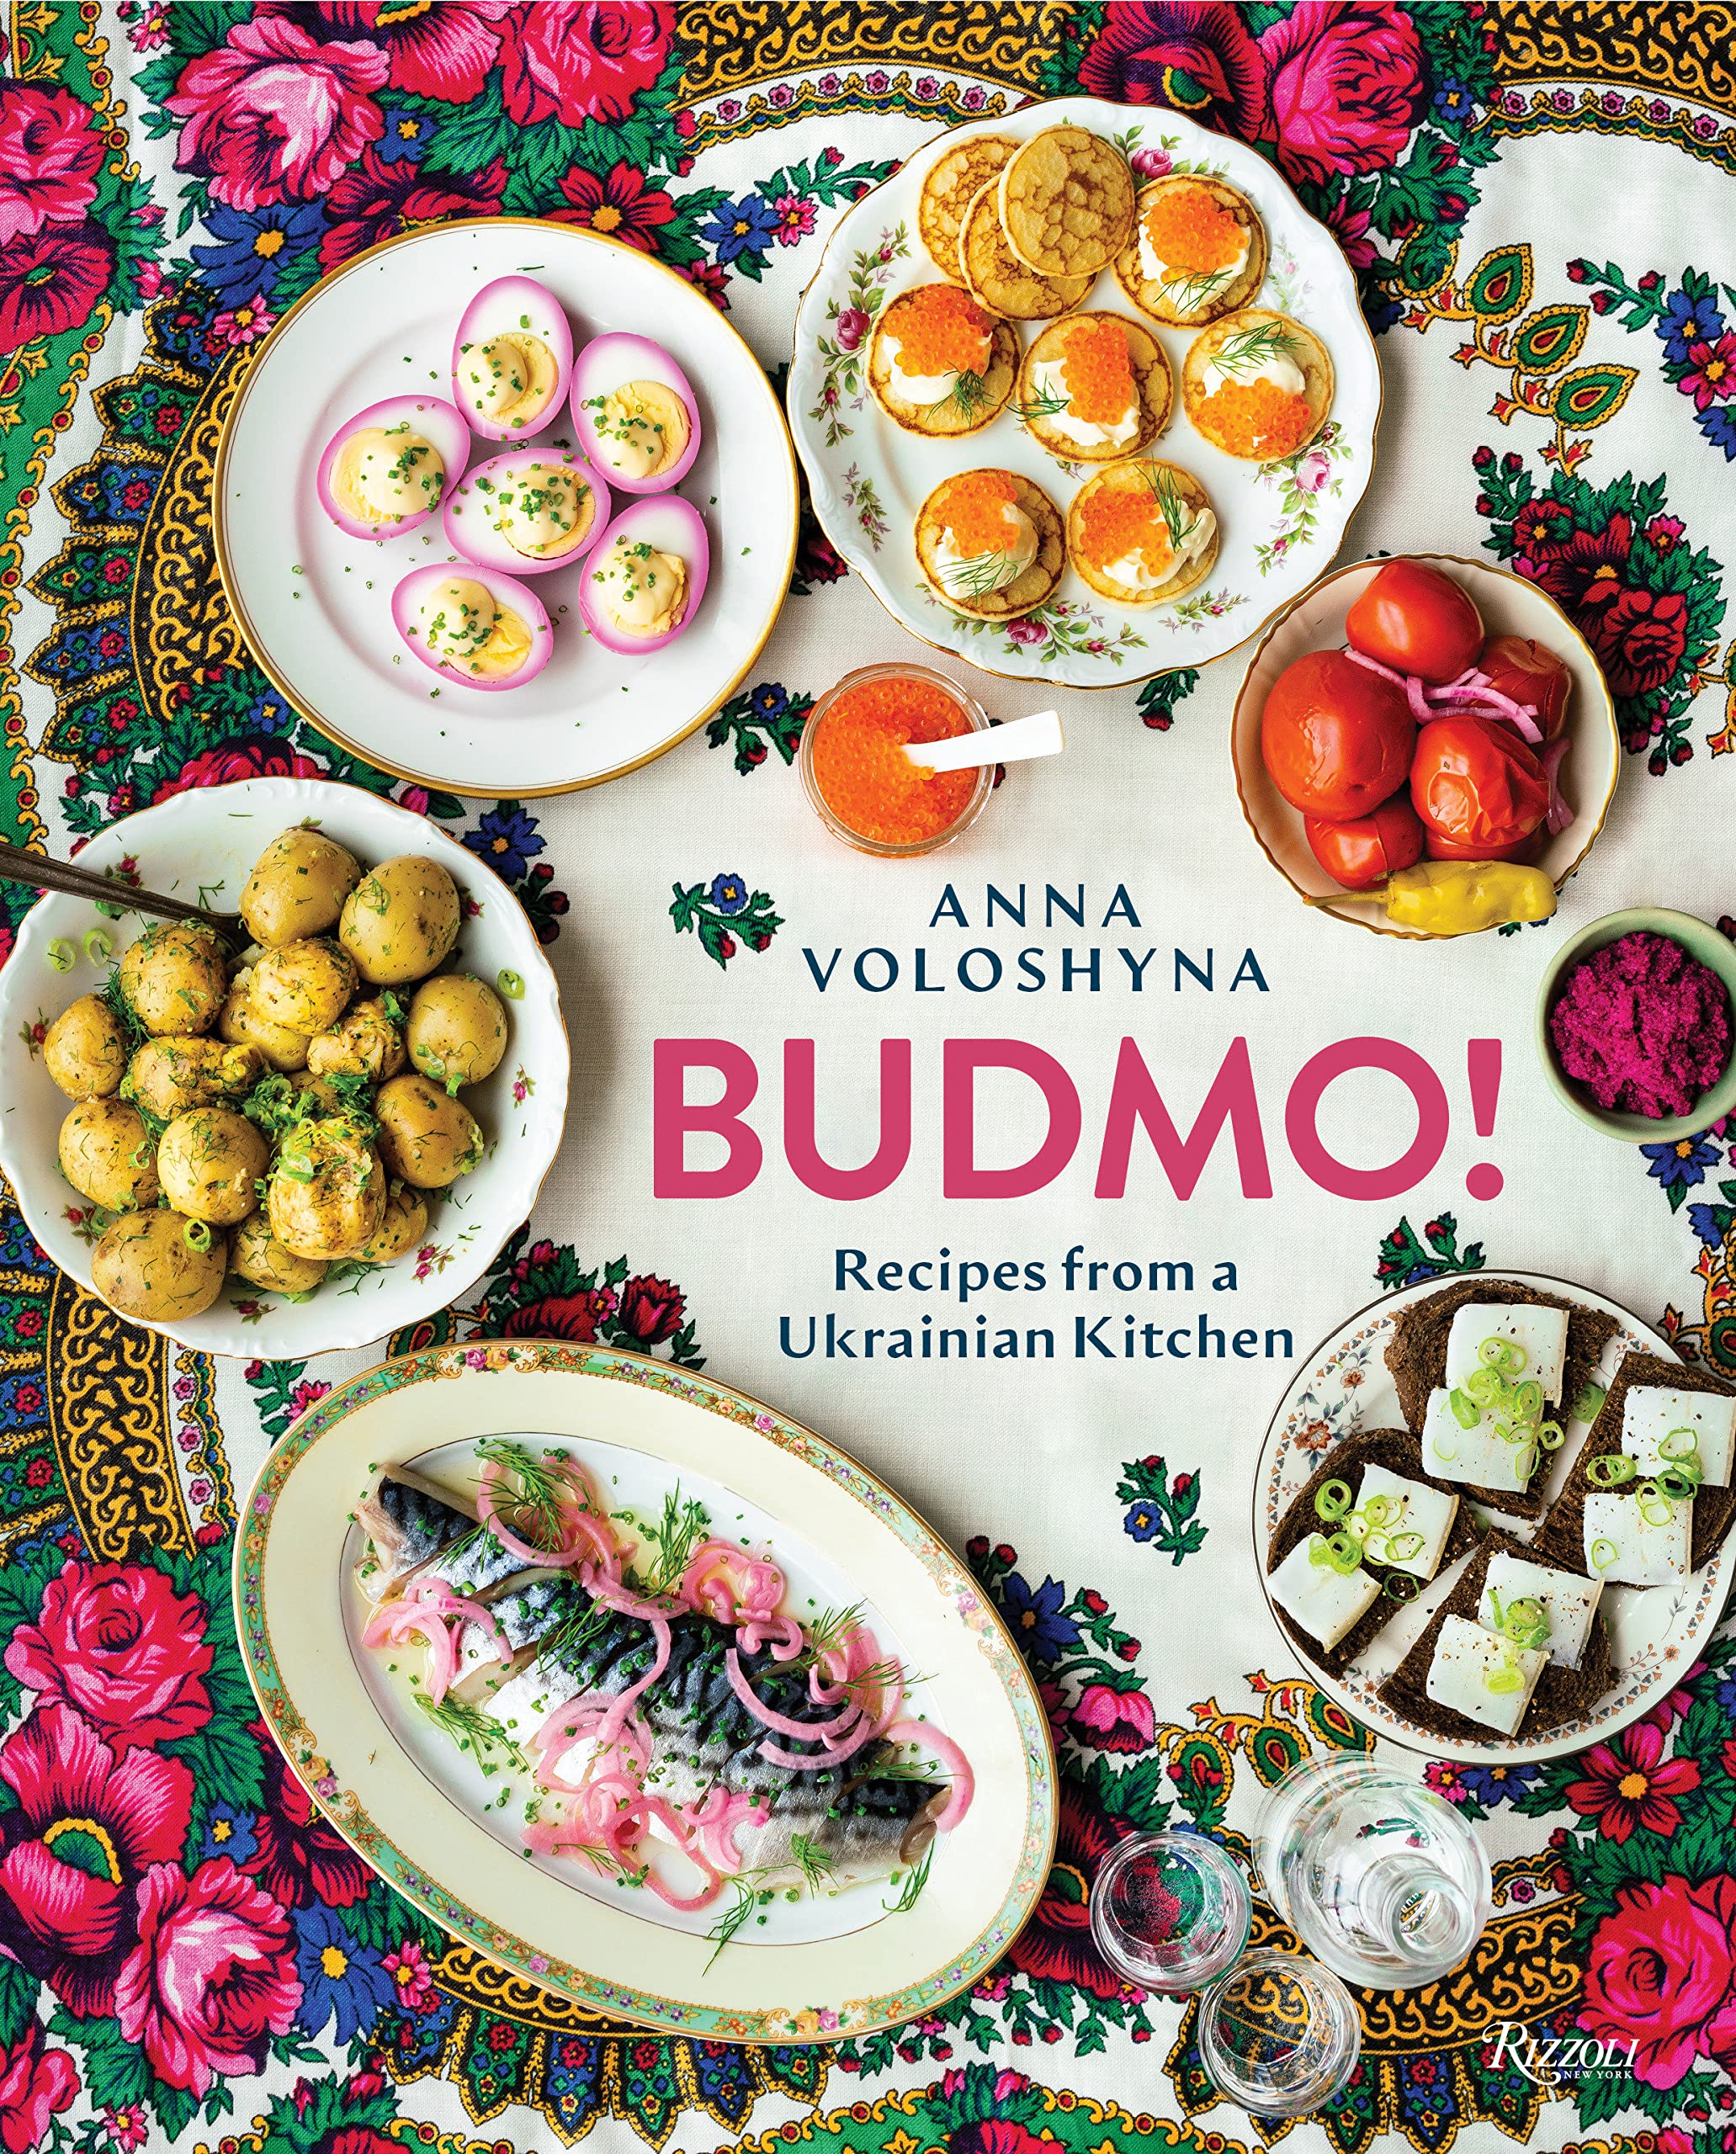 Budmo! Recipes from a Ukrainian Kitchen (Anna Voloshyna) *Signed*